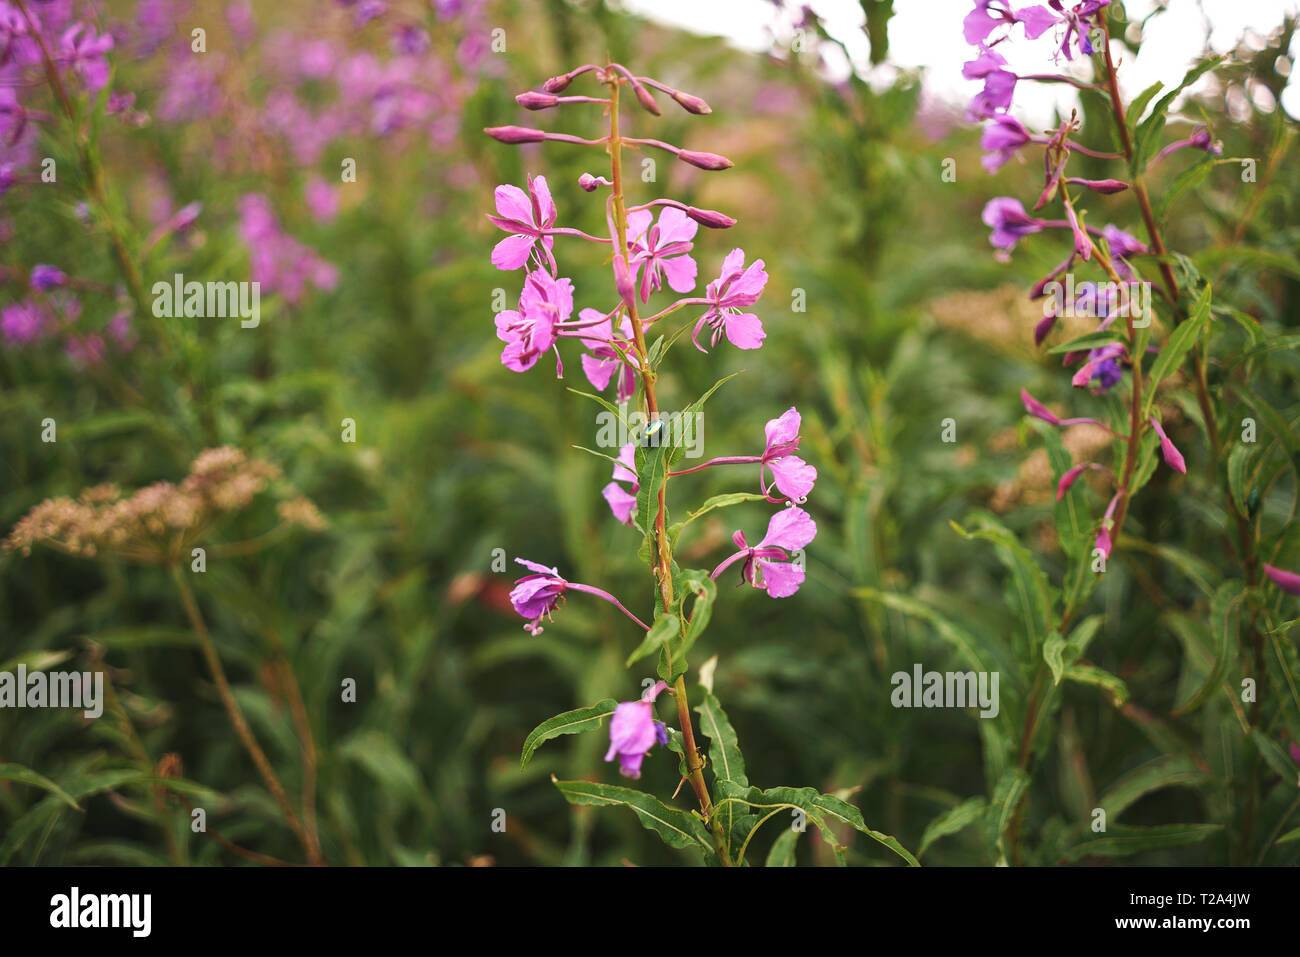 Onu curioso insetto poggia su anu meravigliosa pianta rosa Foto de stock